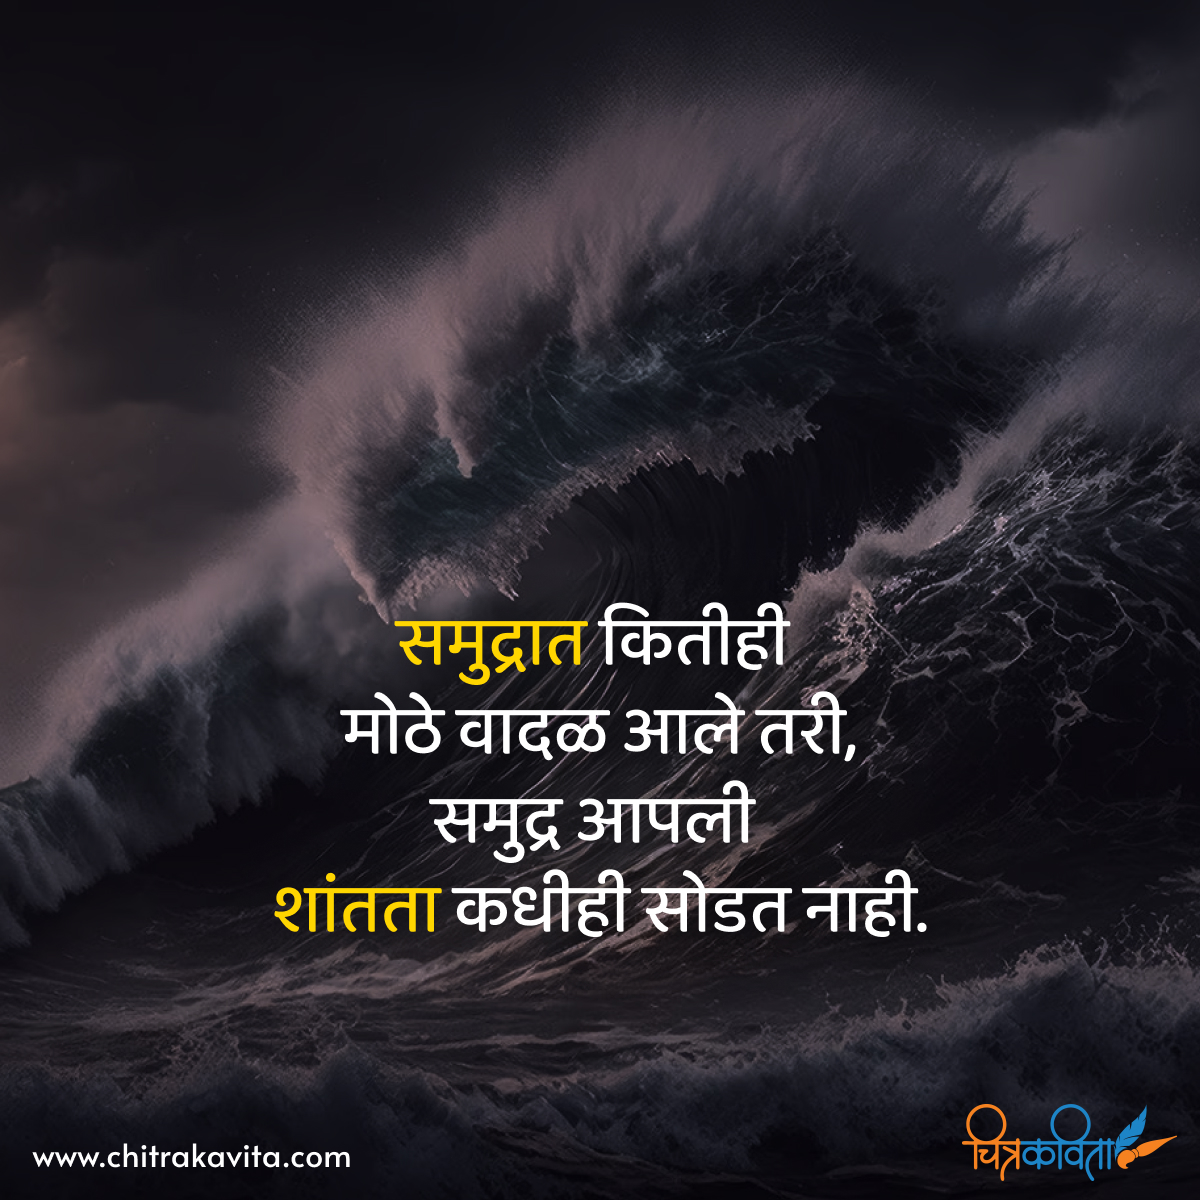 silence, marathi quotes, samudra, storms, marathi inspirational quotes, marathi status